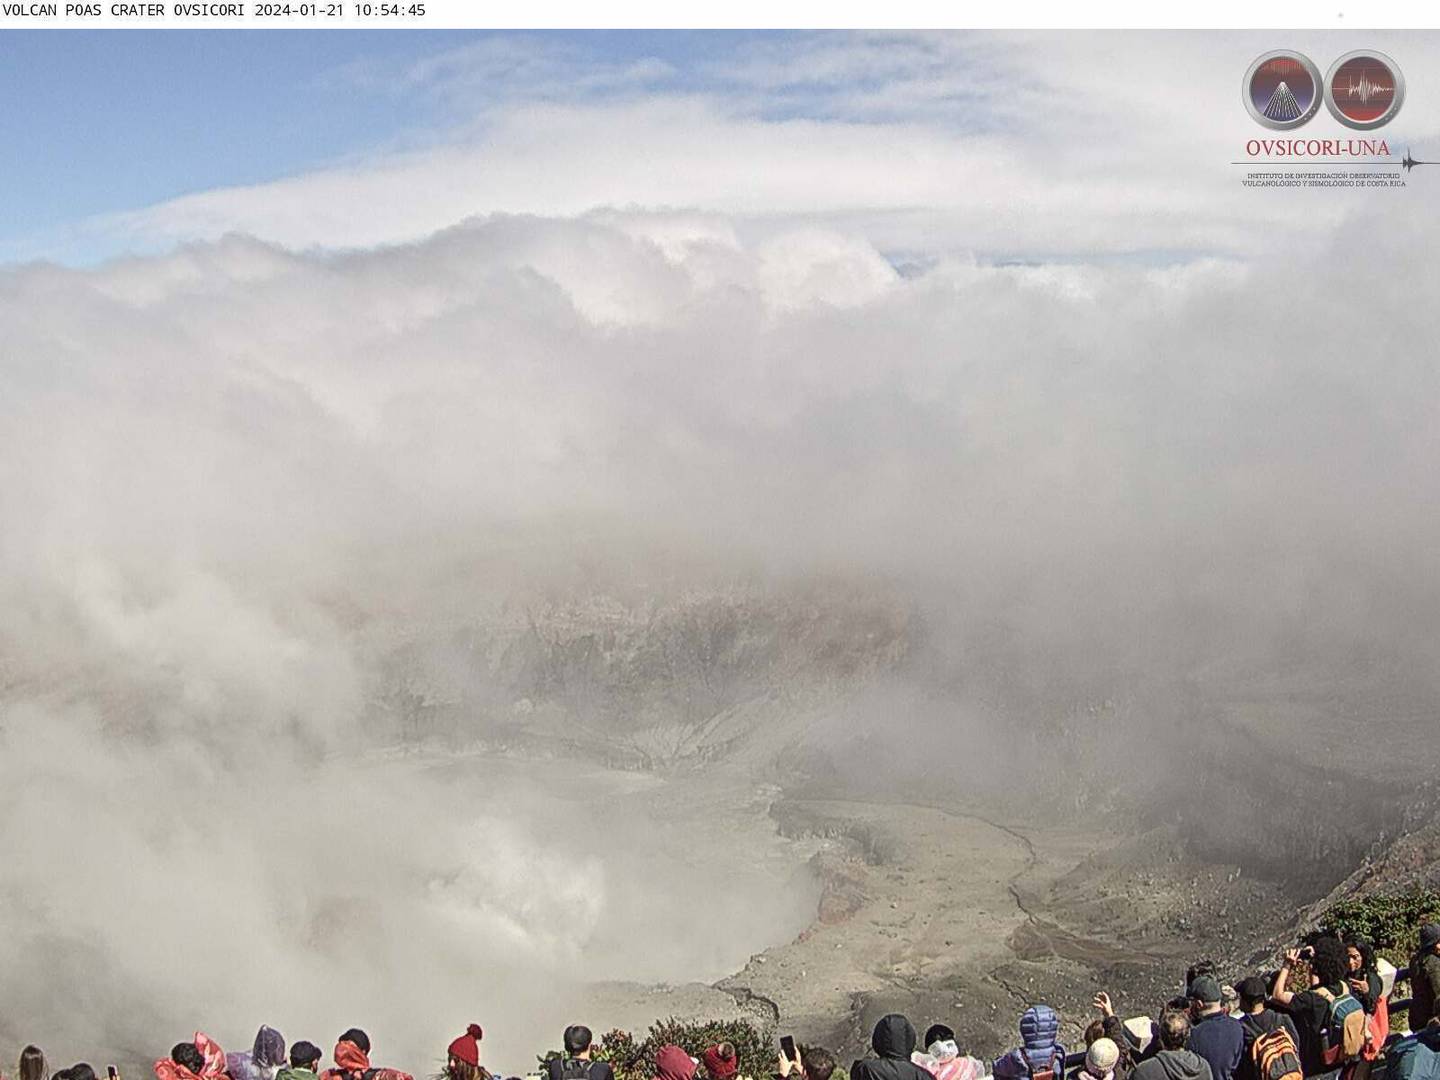 Muchos turistas aprovecharon los momentos en que el cráter se despejó este domingo para ver la constante actividad de fumarolas y pequeñas erupciones tipo géiser. Foto: Ovsicori.